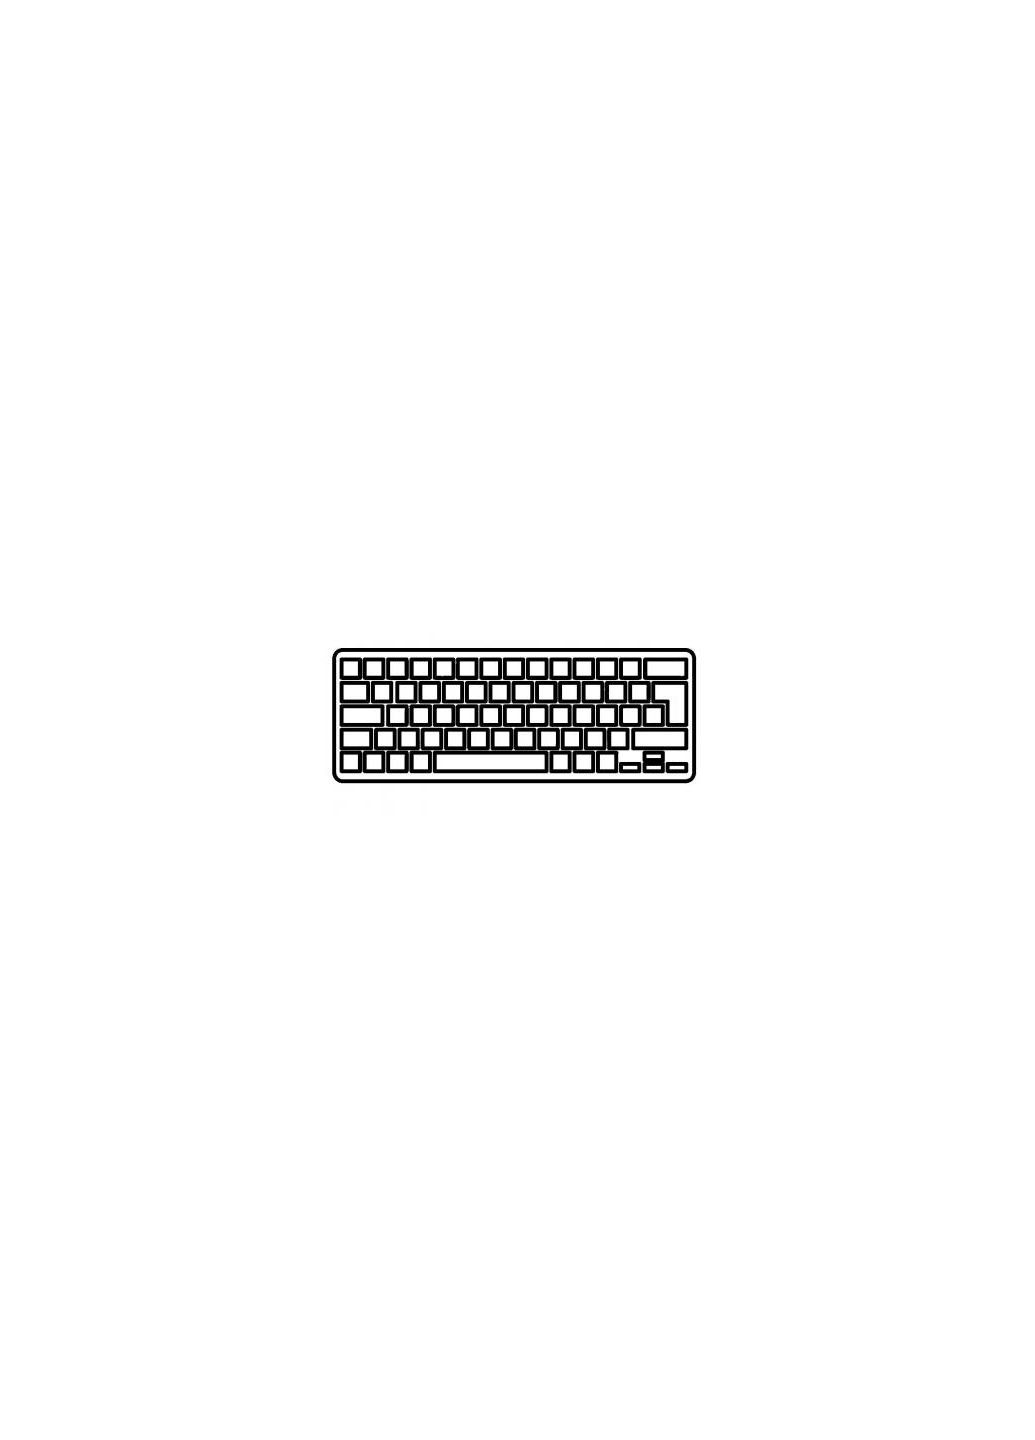 Клавиатура ноутбука Aspire V5473/V5-433/M5-483 Series черная без рамки RU (A43724) Acer aspire v5-473/v5-433/m5-483 series черная без рамк (276706608)